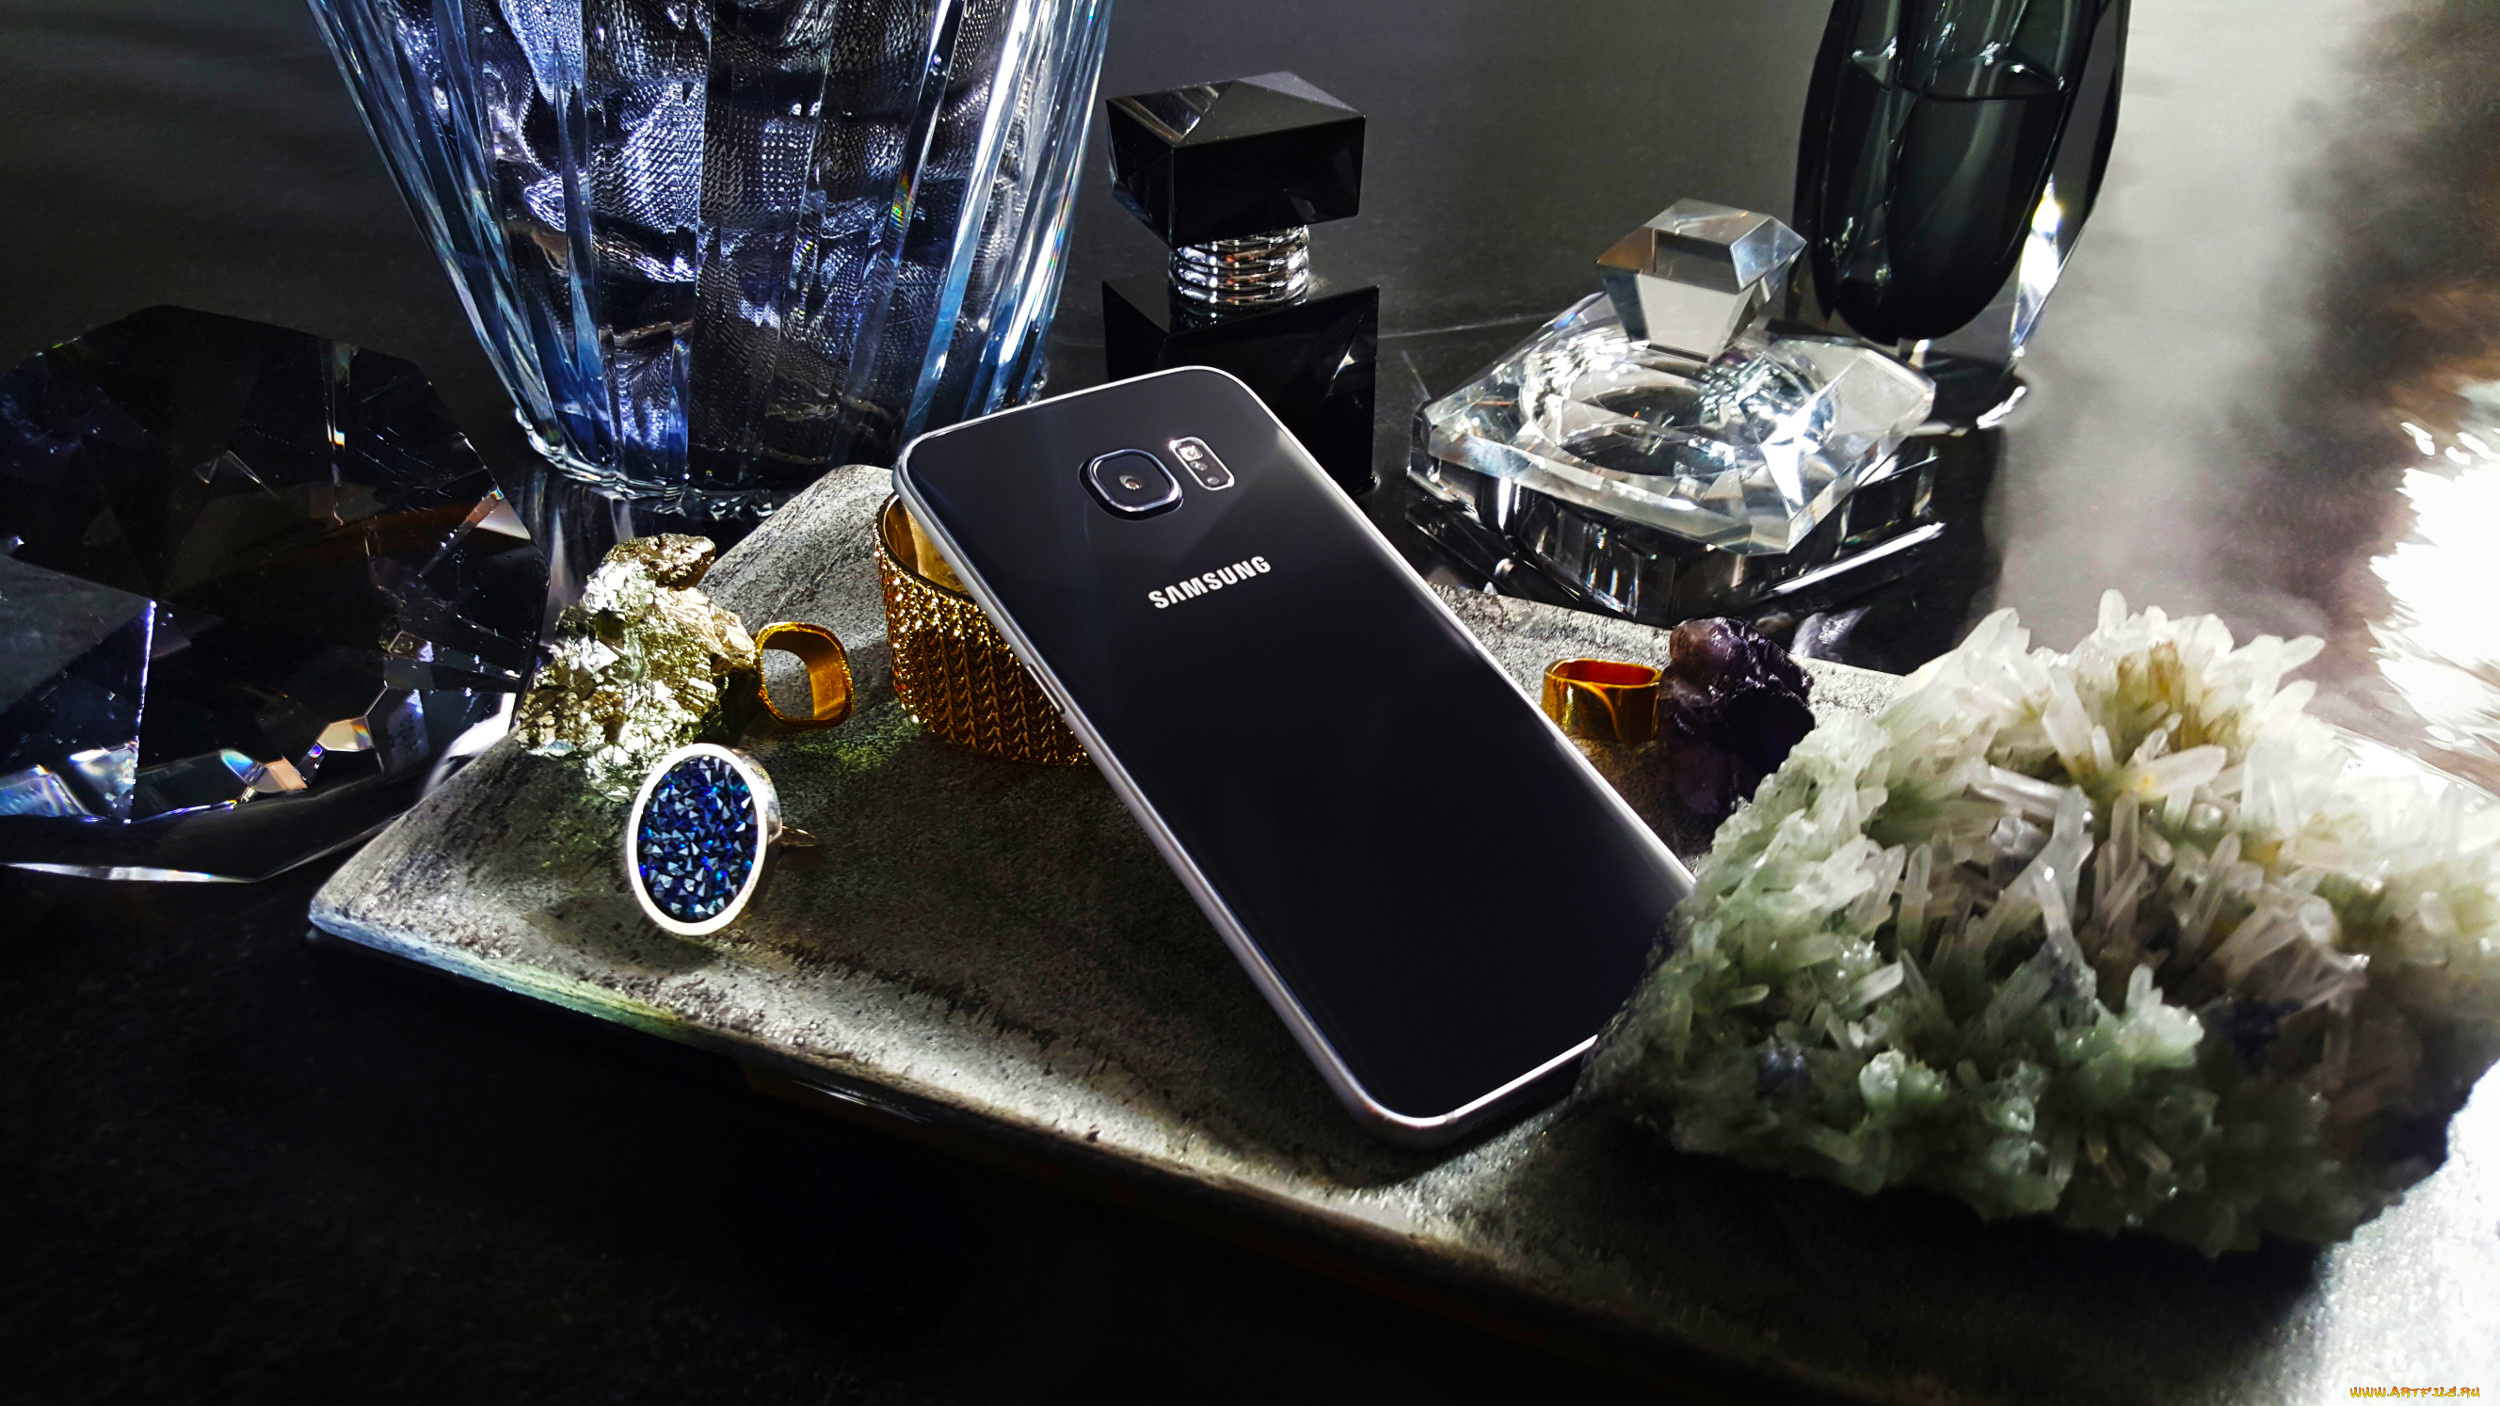 samsung, galaxy, s-6, android, бренды, samsung, драгоценности, кристаллы, минералы, самсунг, камни, смартфон, телефон